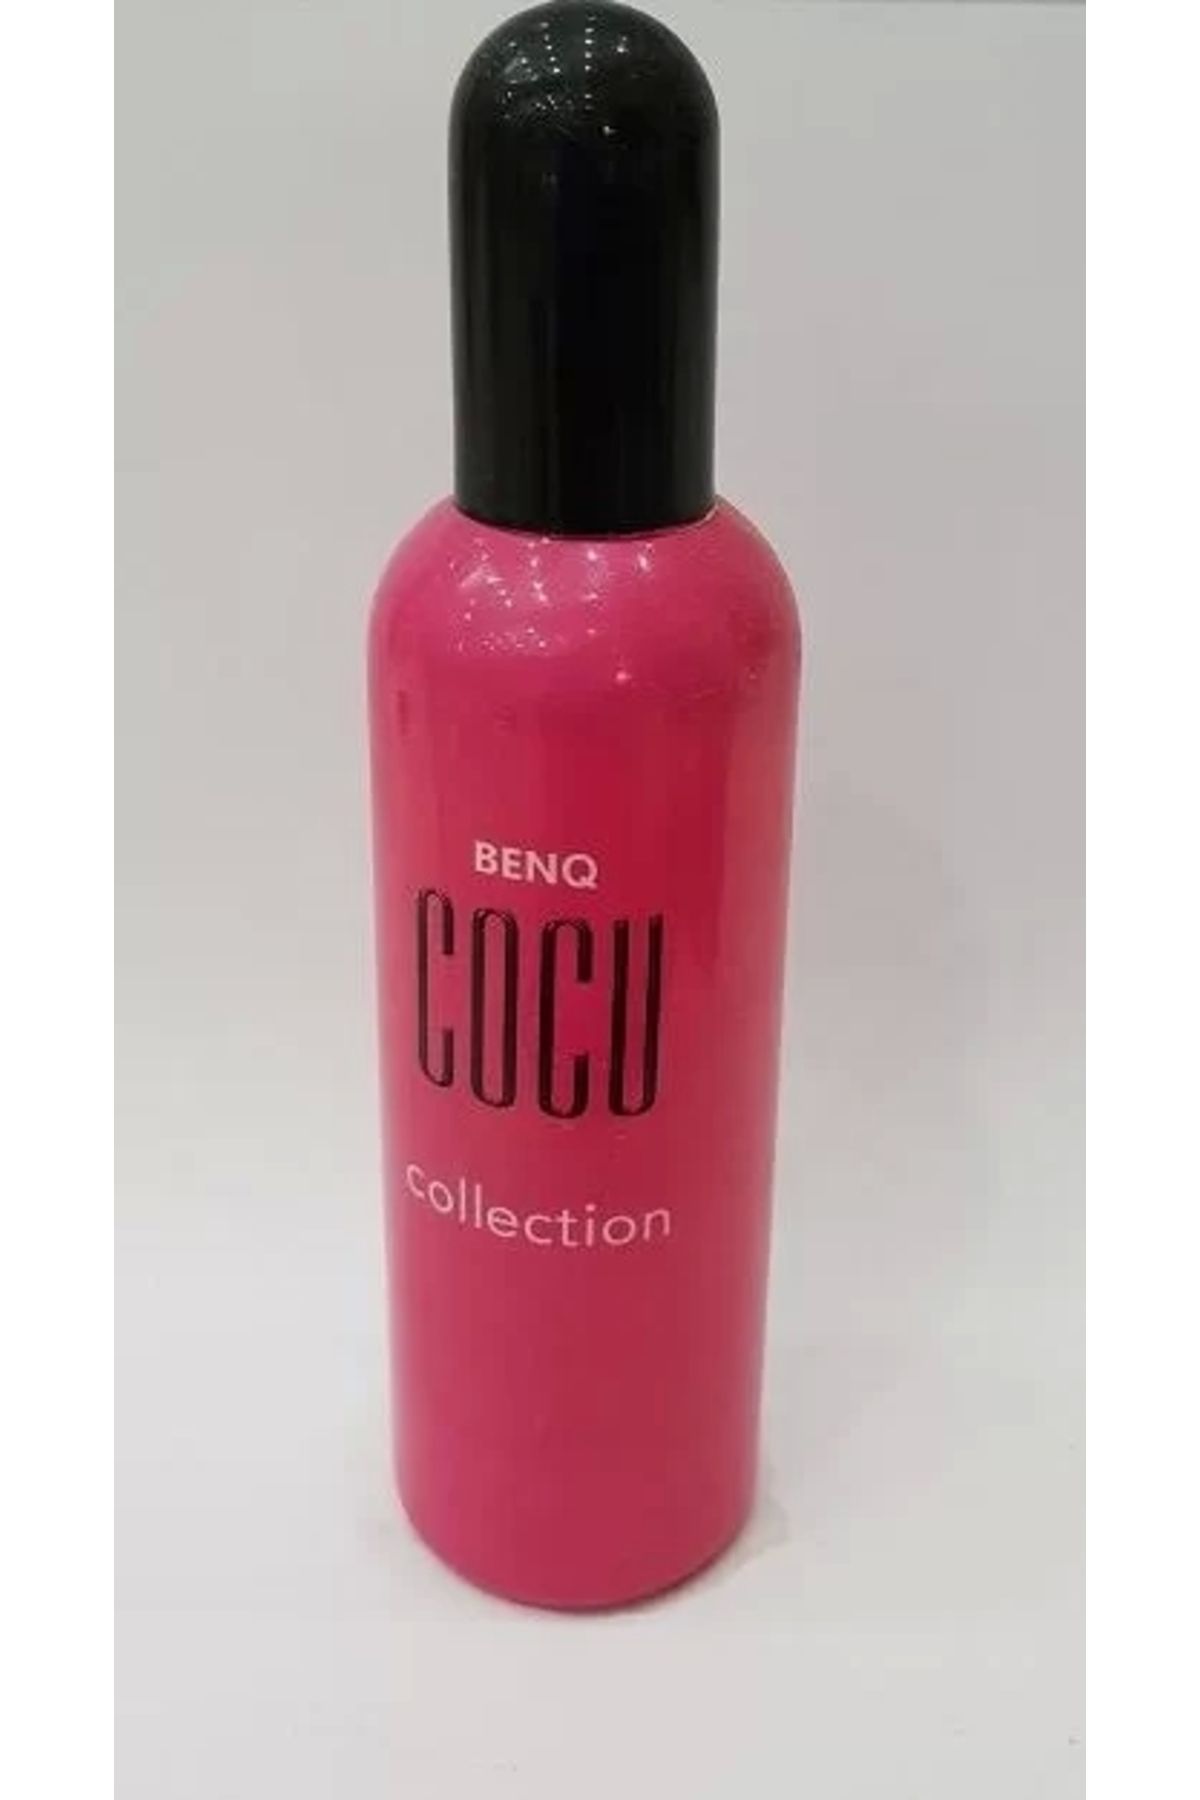 BENQ Cocu Collection Kadın Parfümü